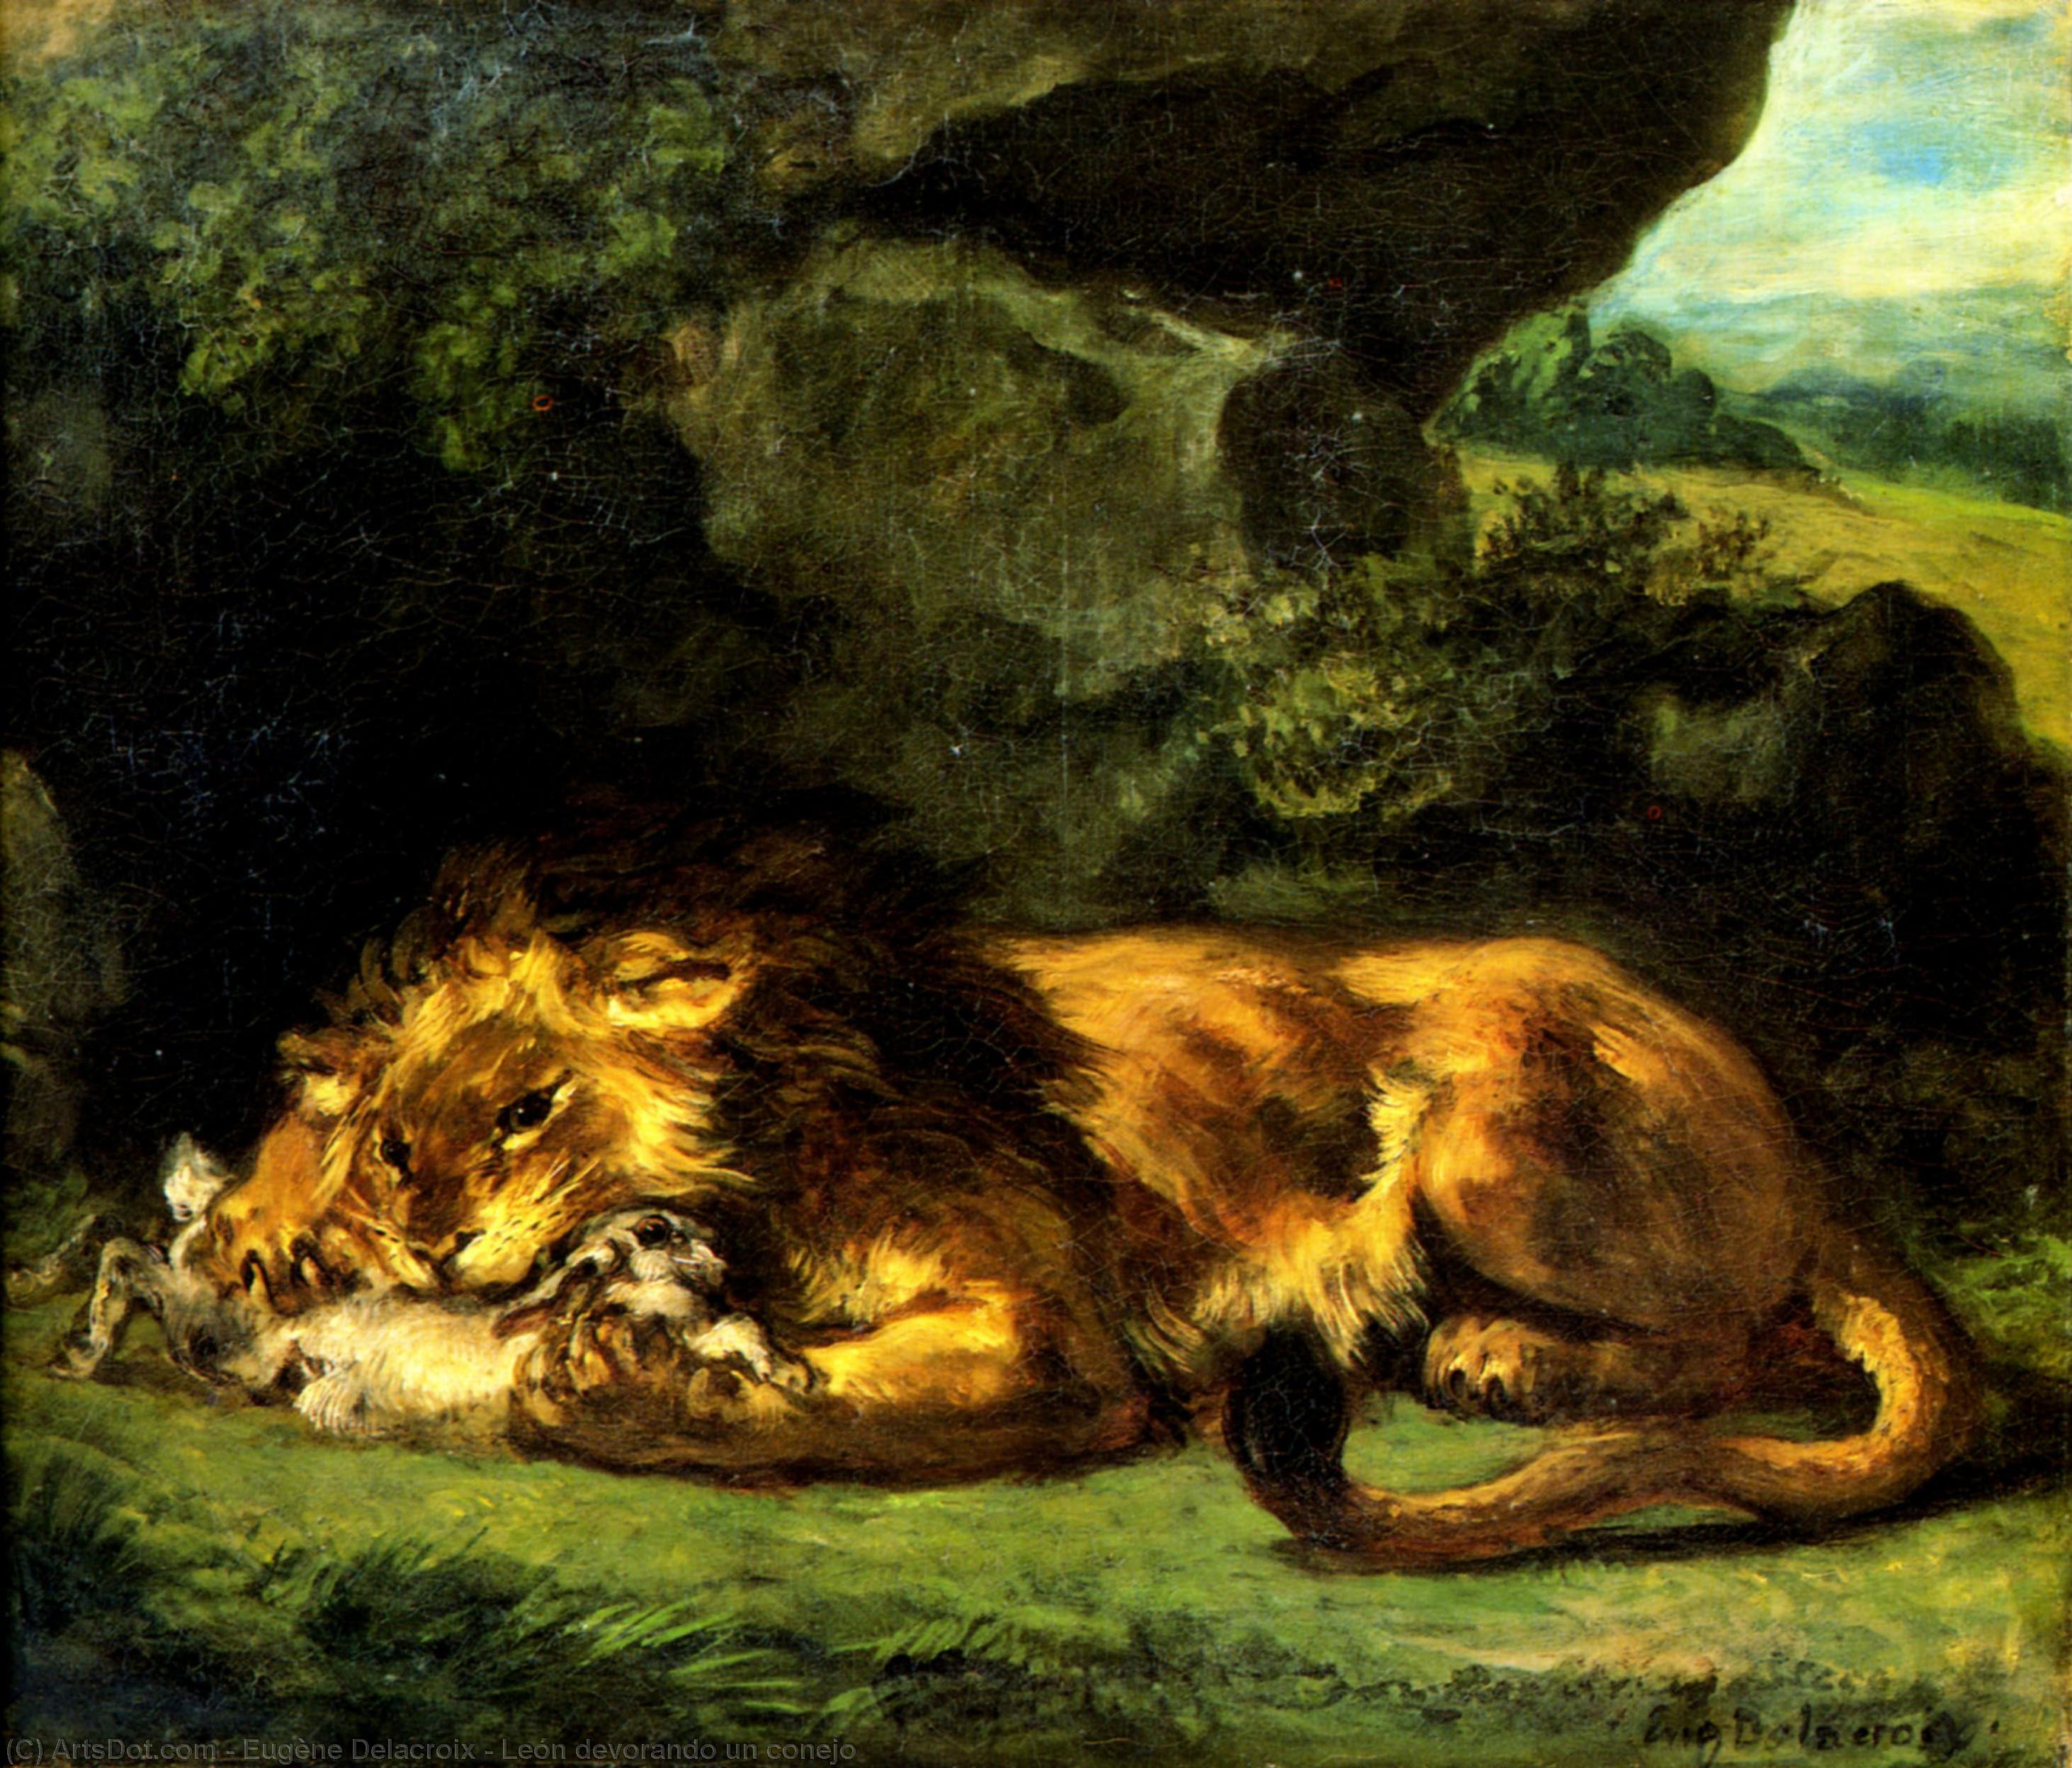 WikiOO.org - Encyclopedia of Fine Arts - Maľba, Artwork Eugène Delacroix - León devorando un conejo